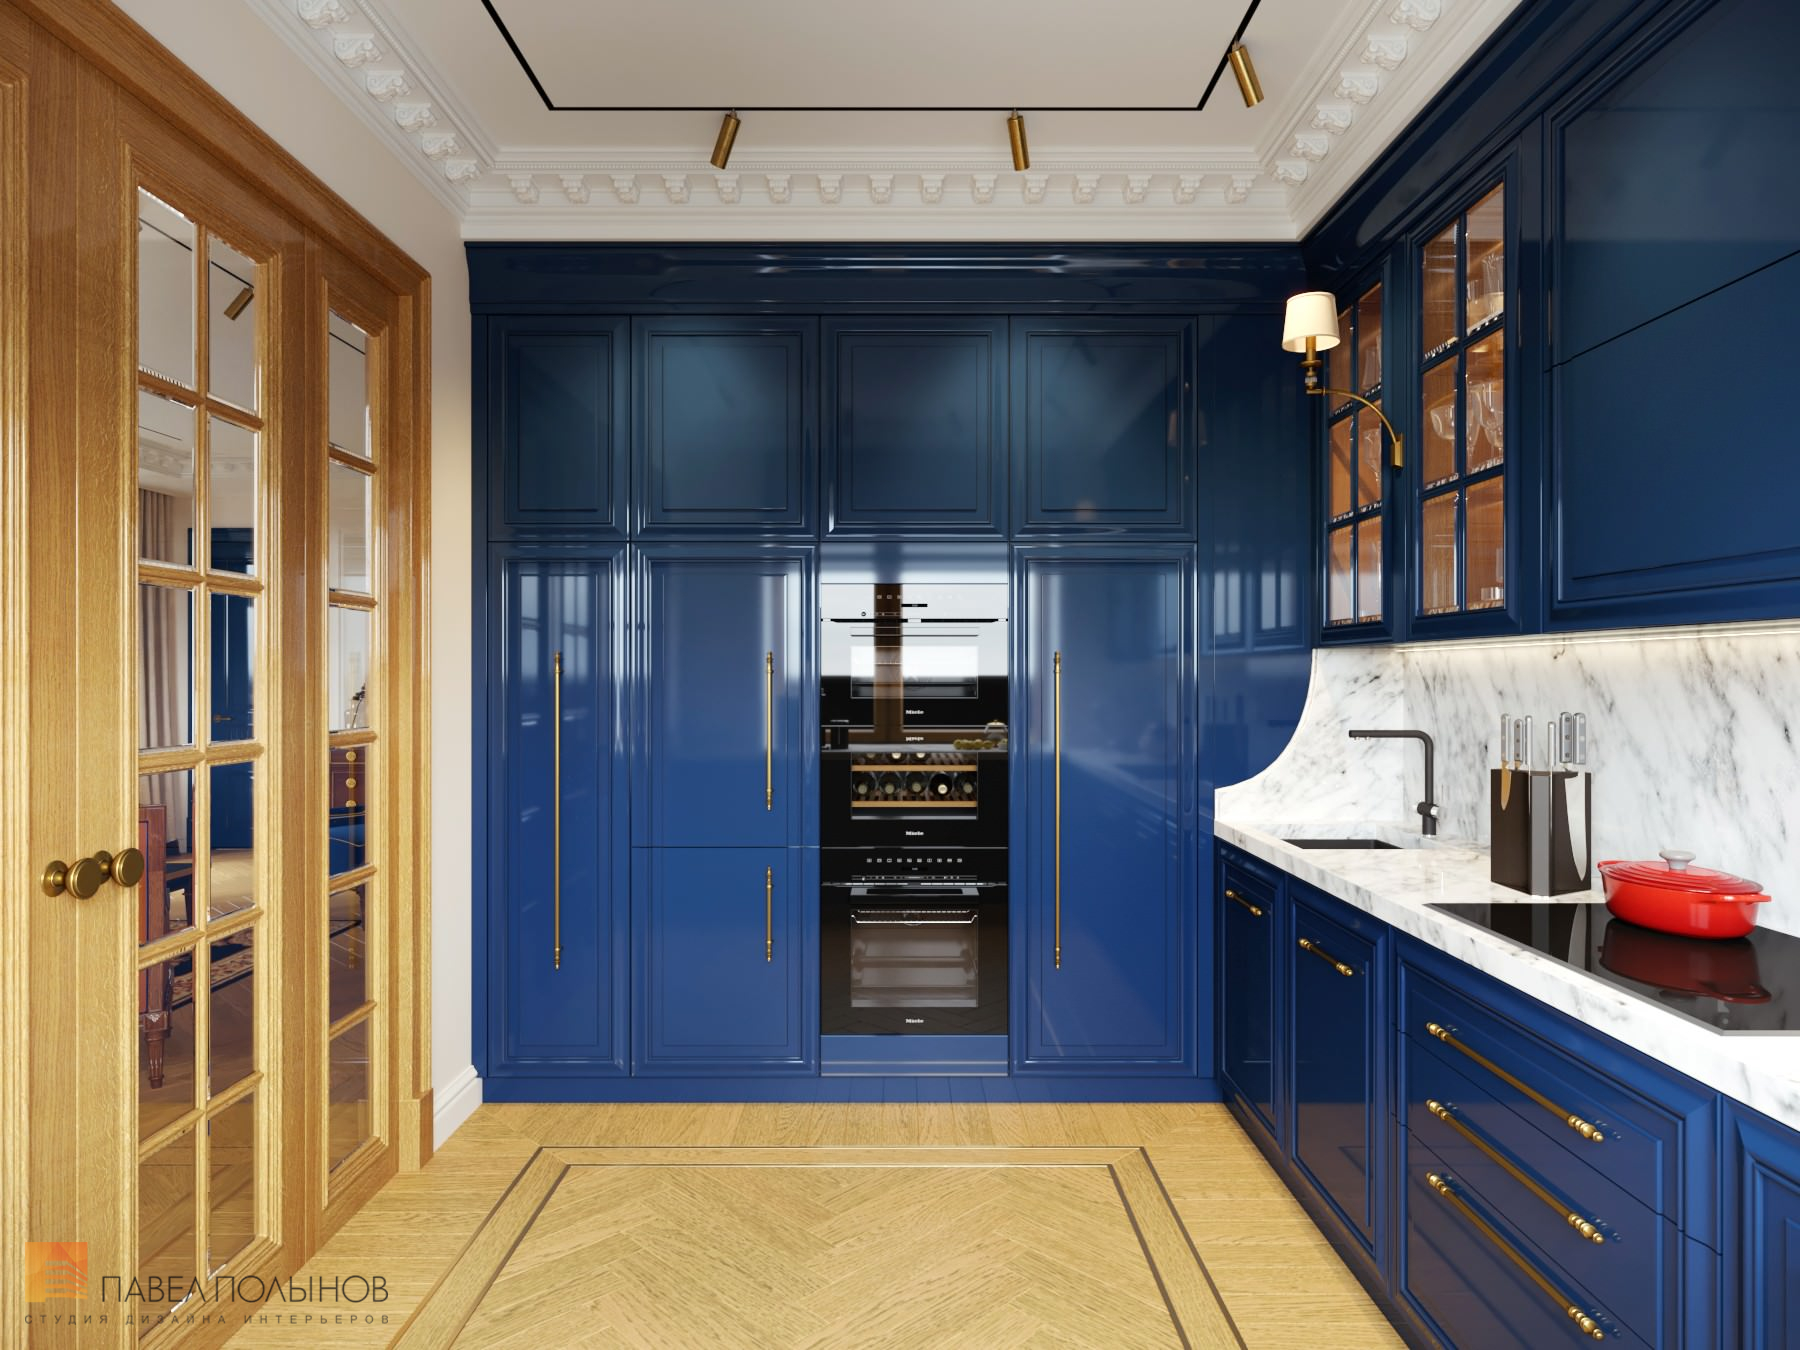 Фото дизайн кухни из проекта «Интерьер квартиры в стиле английской классики, ЖК «Патриот», 124 кв.м.»